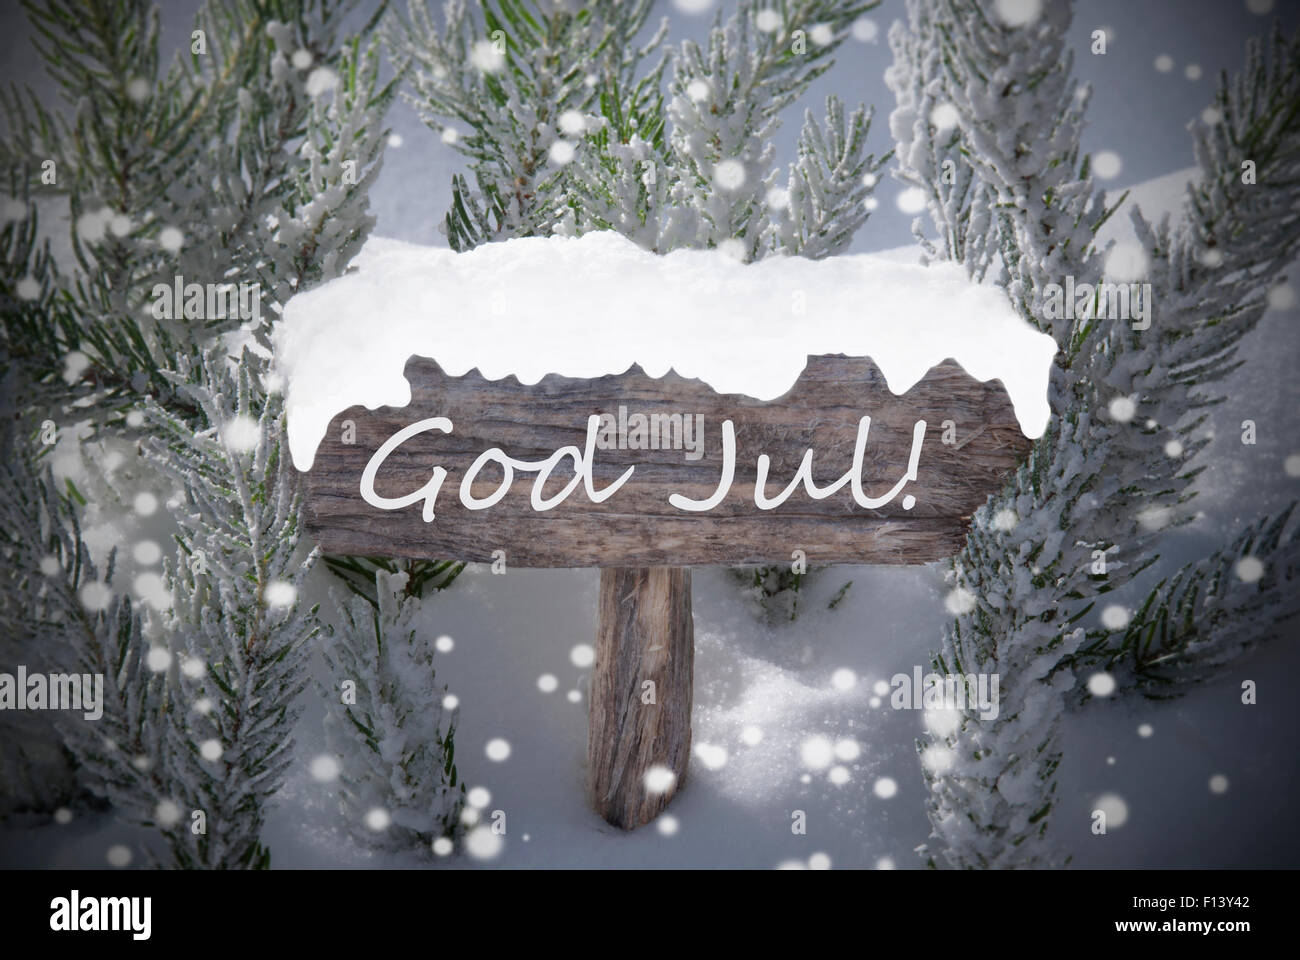 Zeichen Schneeflocken Fir Tree Gott Jul bedeutet Frohe Weihnachten Stockfoto